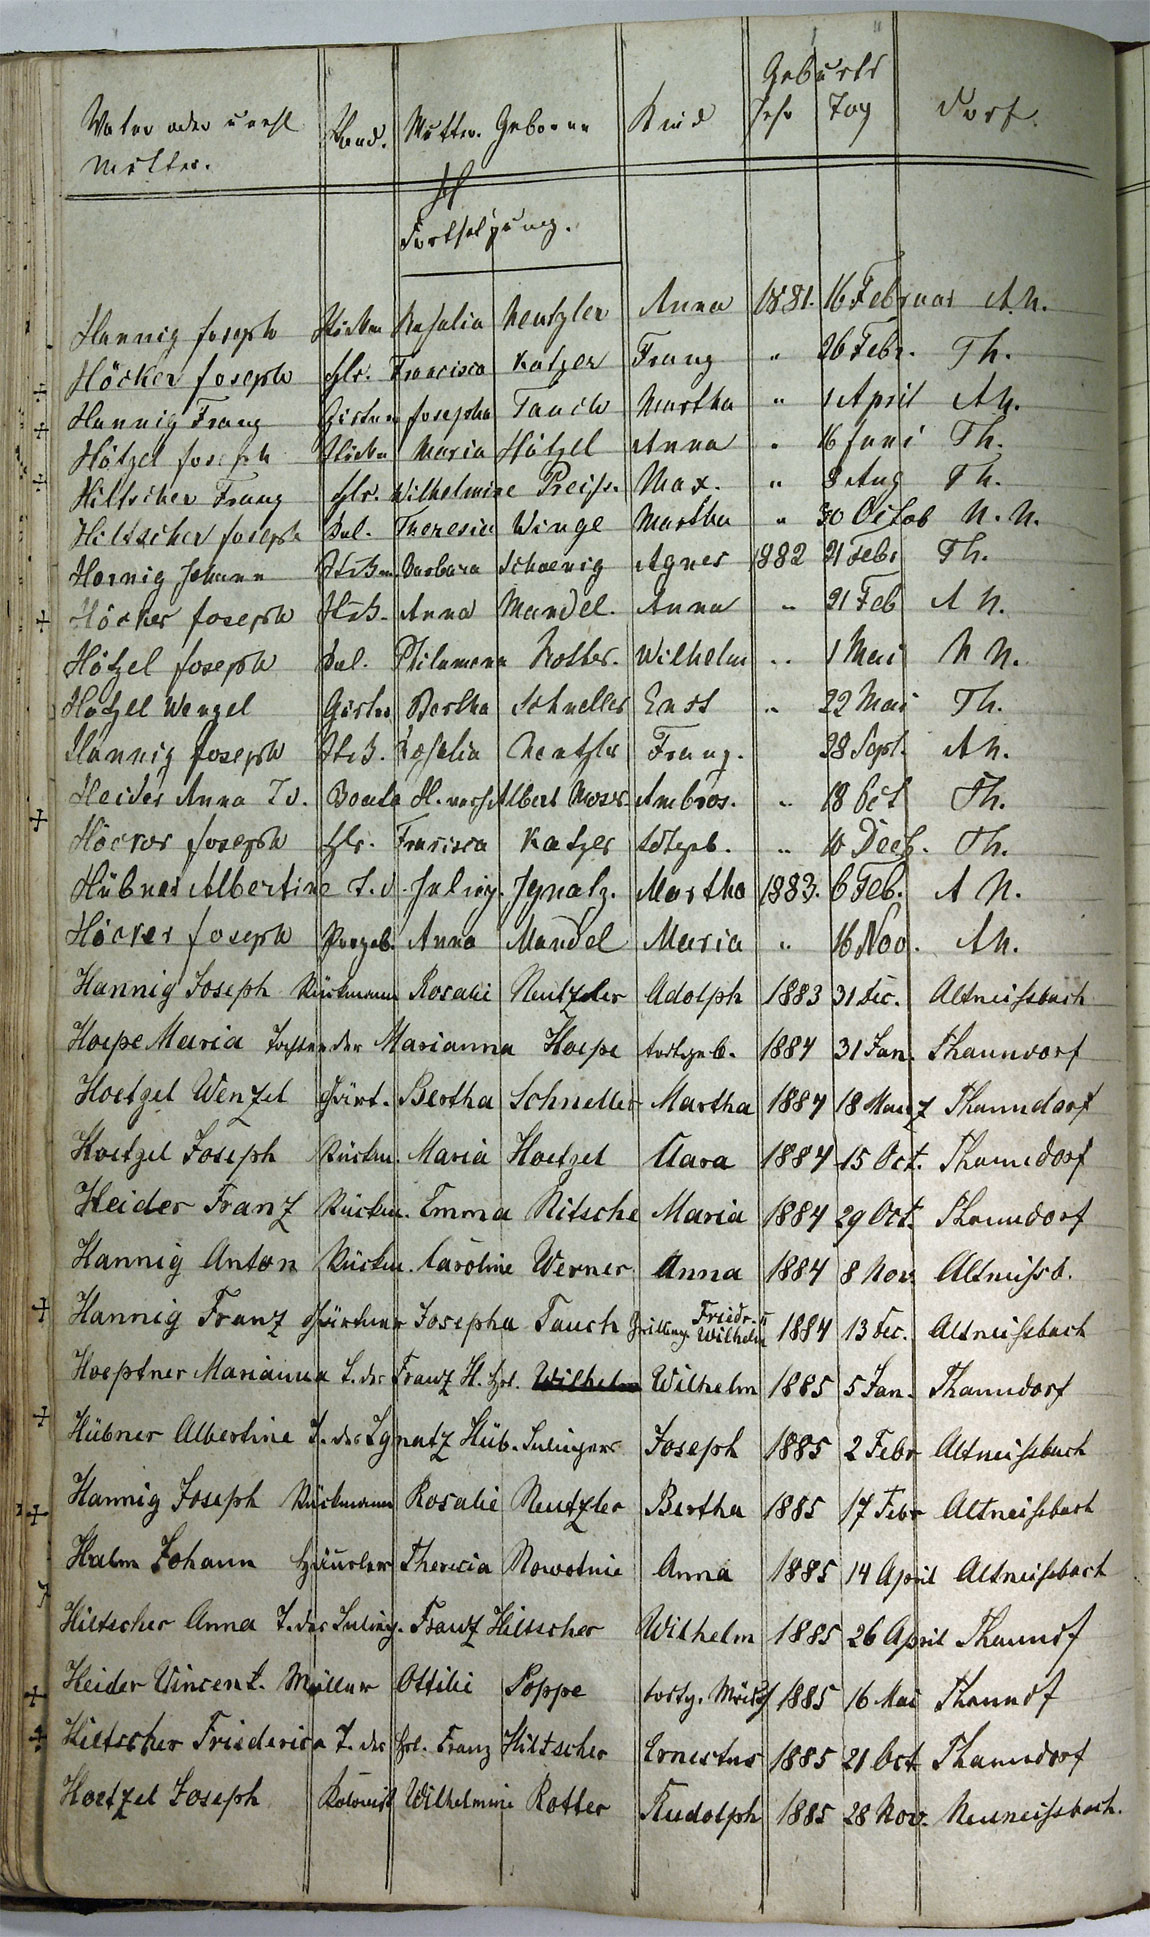 Taufregister 1770 - 1889 Seite 69